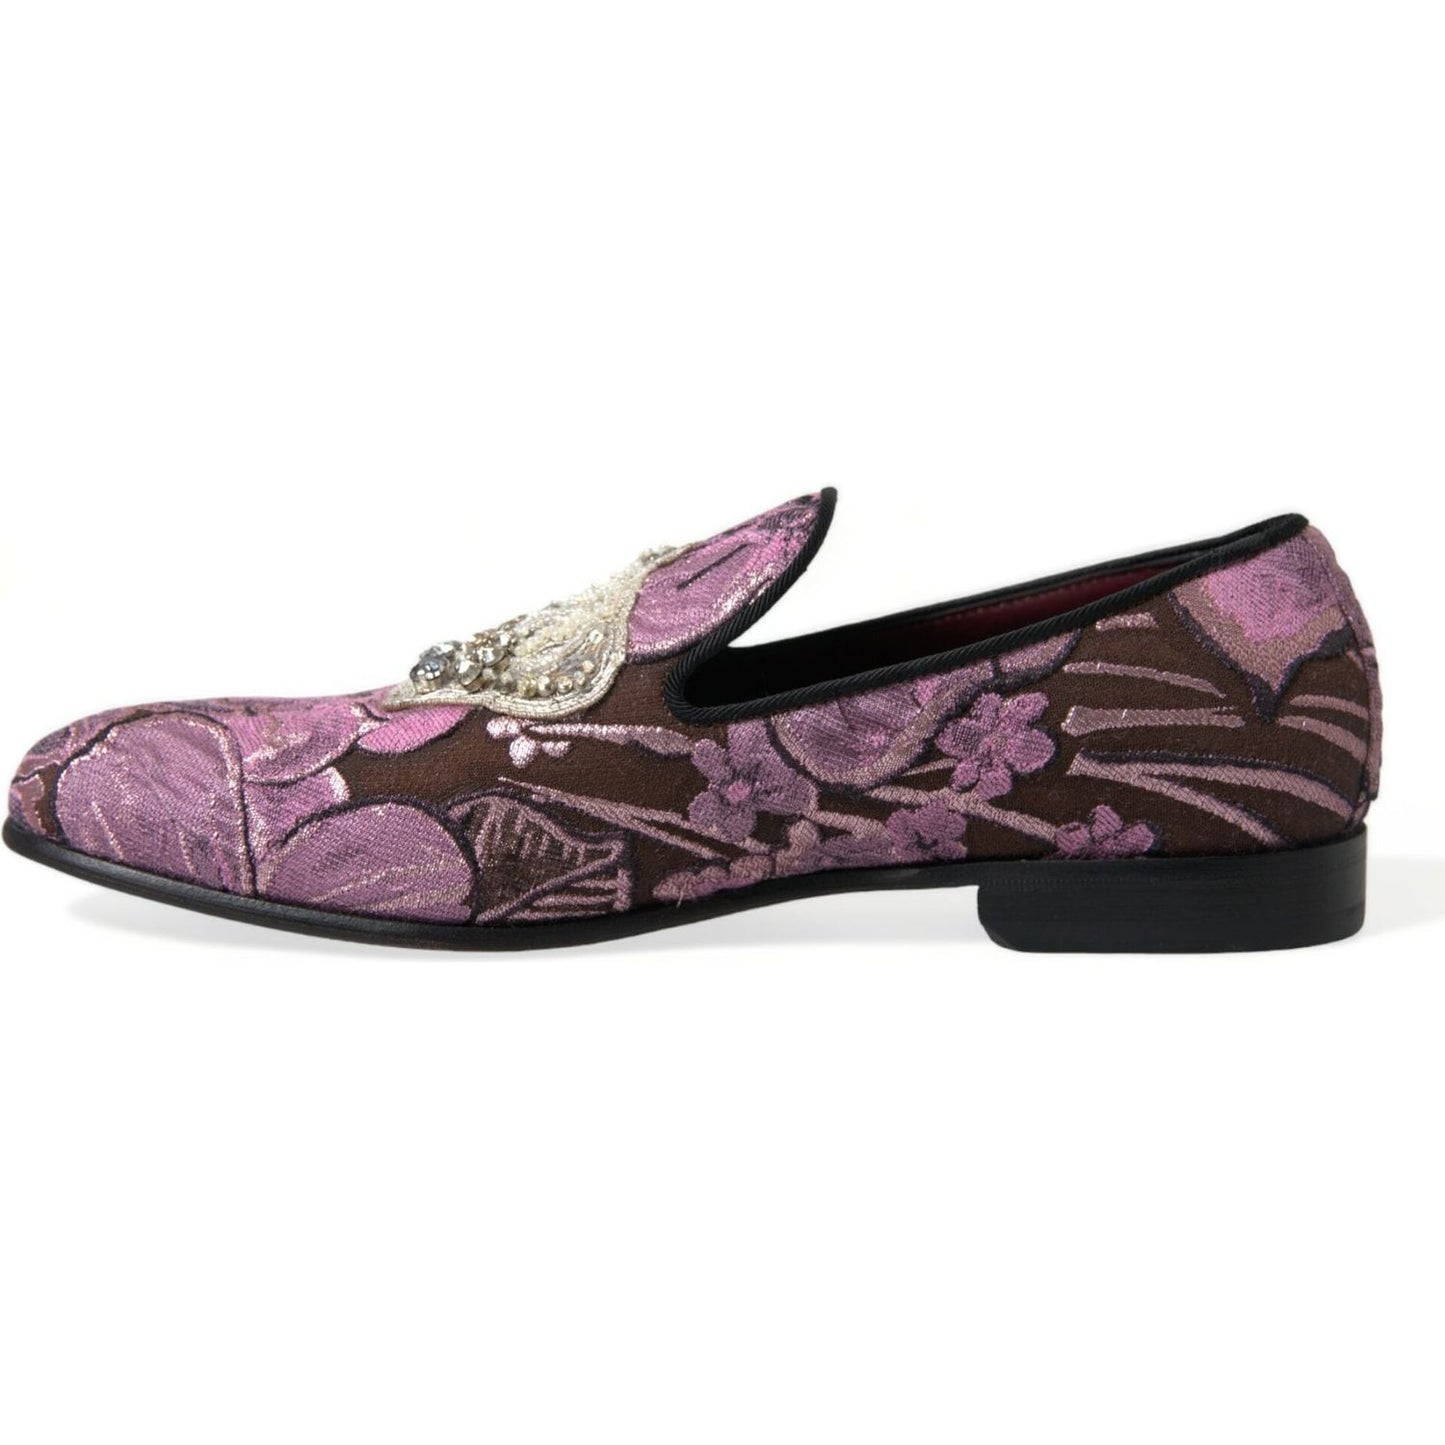 Dolce & Gabbana | Elegant Pink Crystal-Embellished Loafers| McRichard Designer Brands   